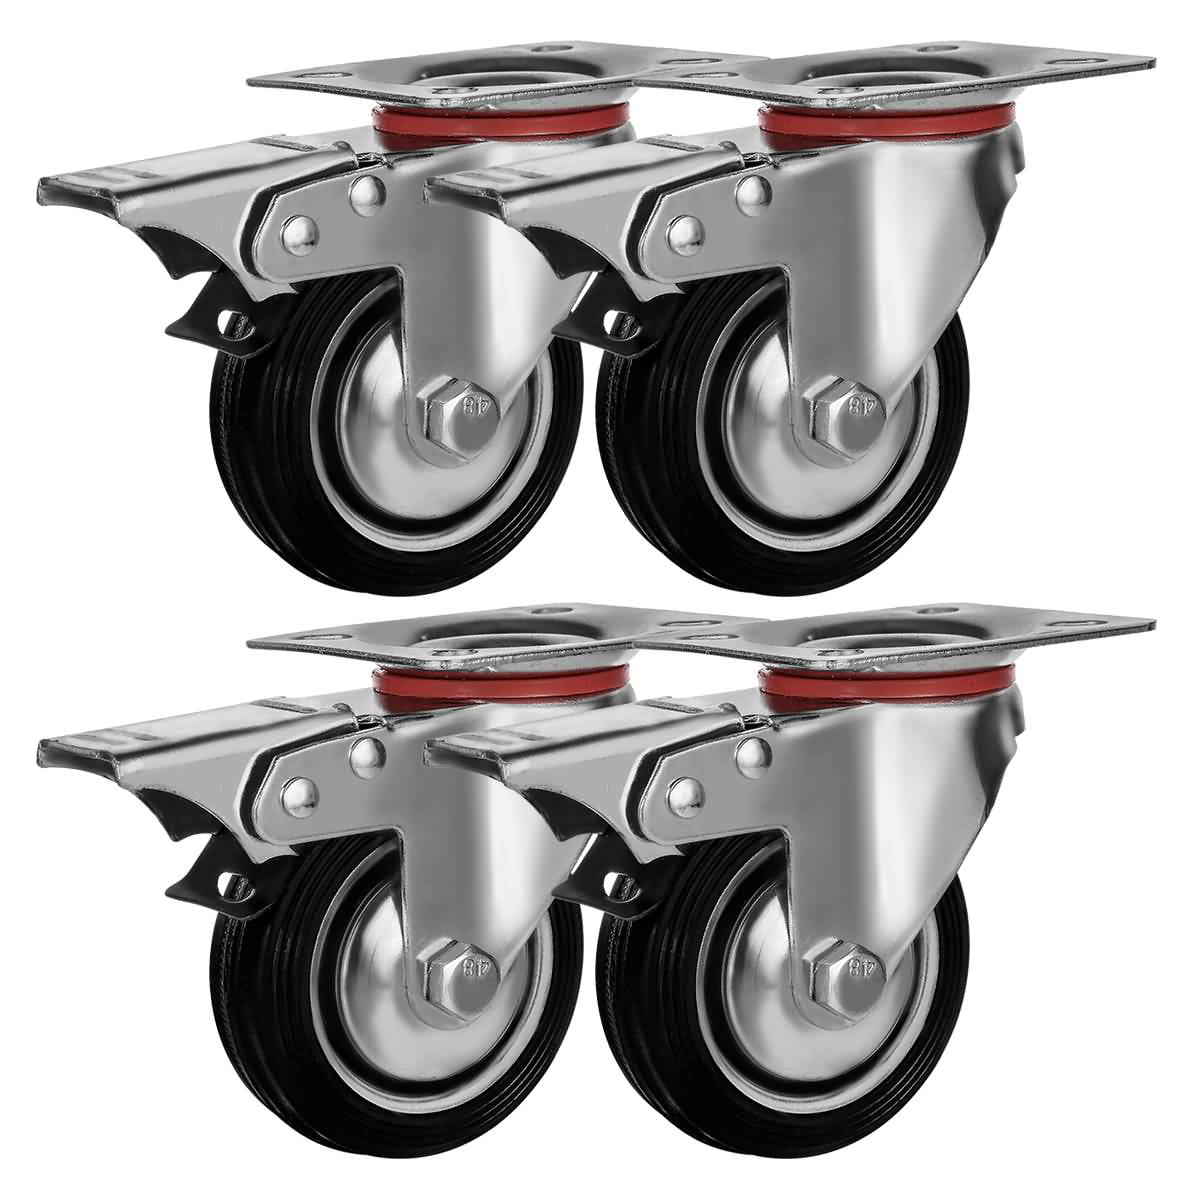 4 Pack Heavy Duty Caster Set 2" Swivel Wheels w/Brake Top Plate Non Skid Castors 